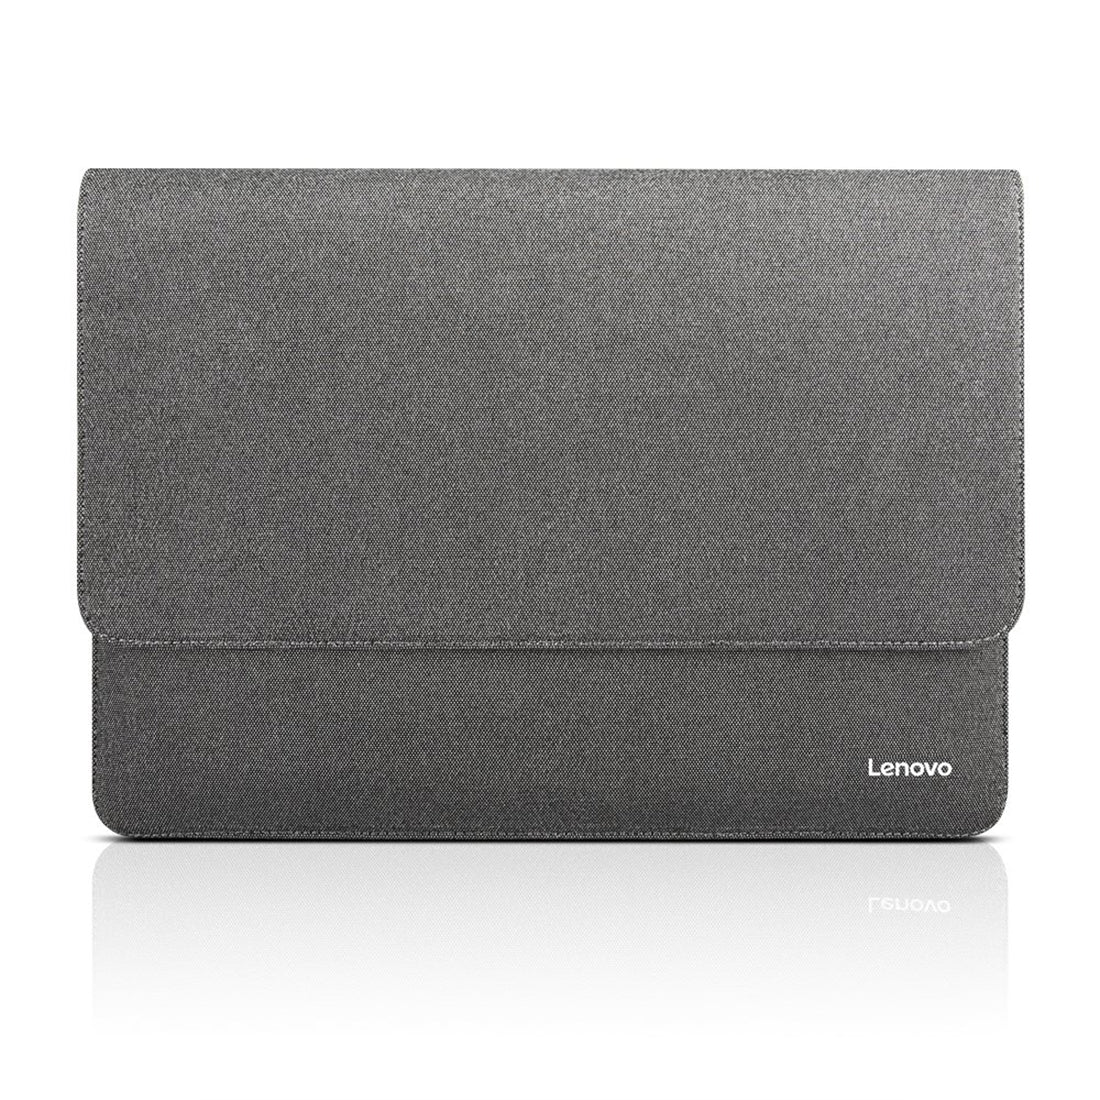 Lenovo GX40P57135 13 इंच के लैपटॉप के लिए अल्ट्रा स्लिम स्लीव स्लिप केस